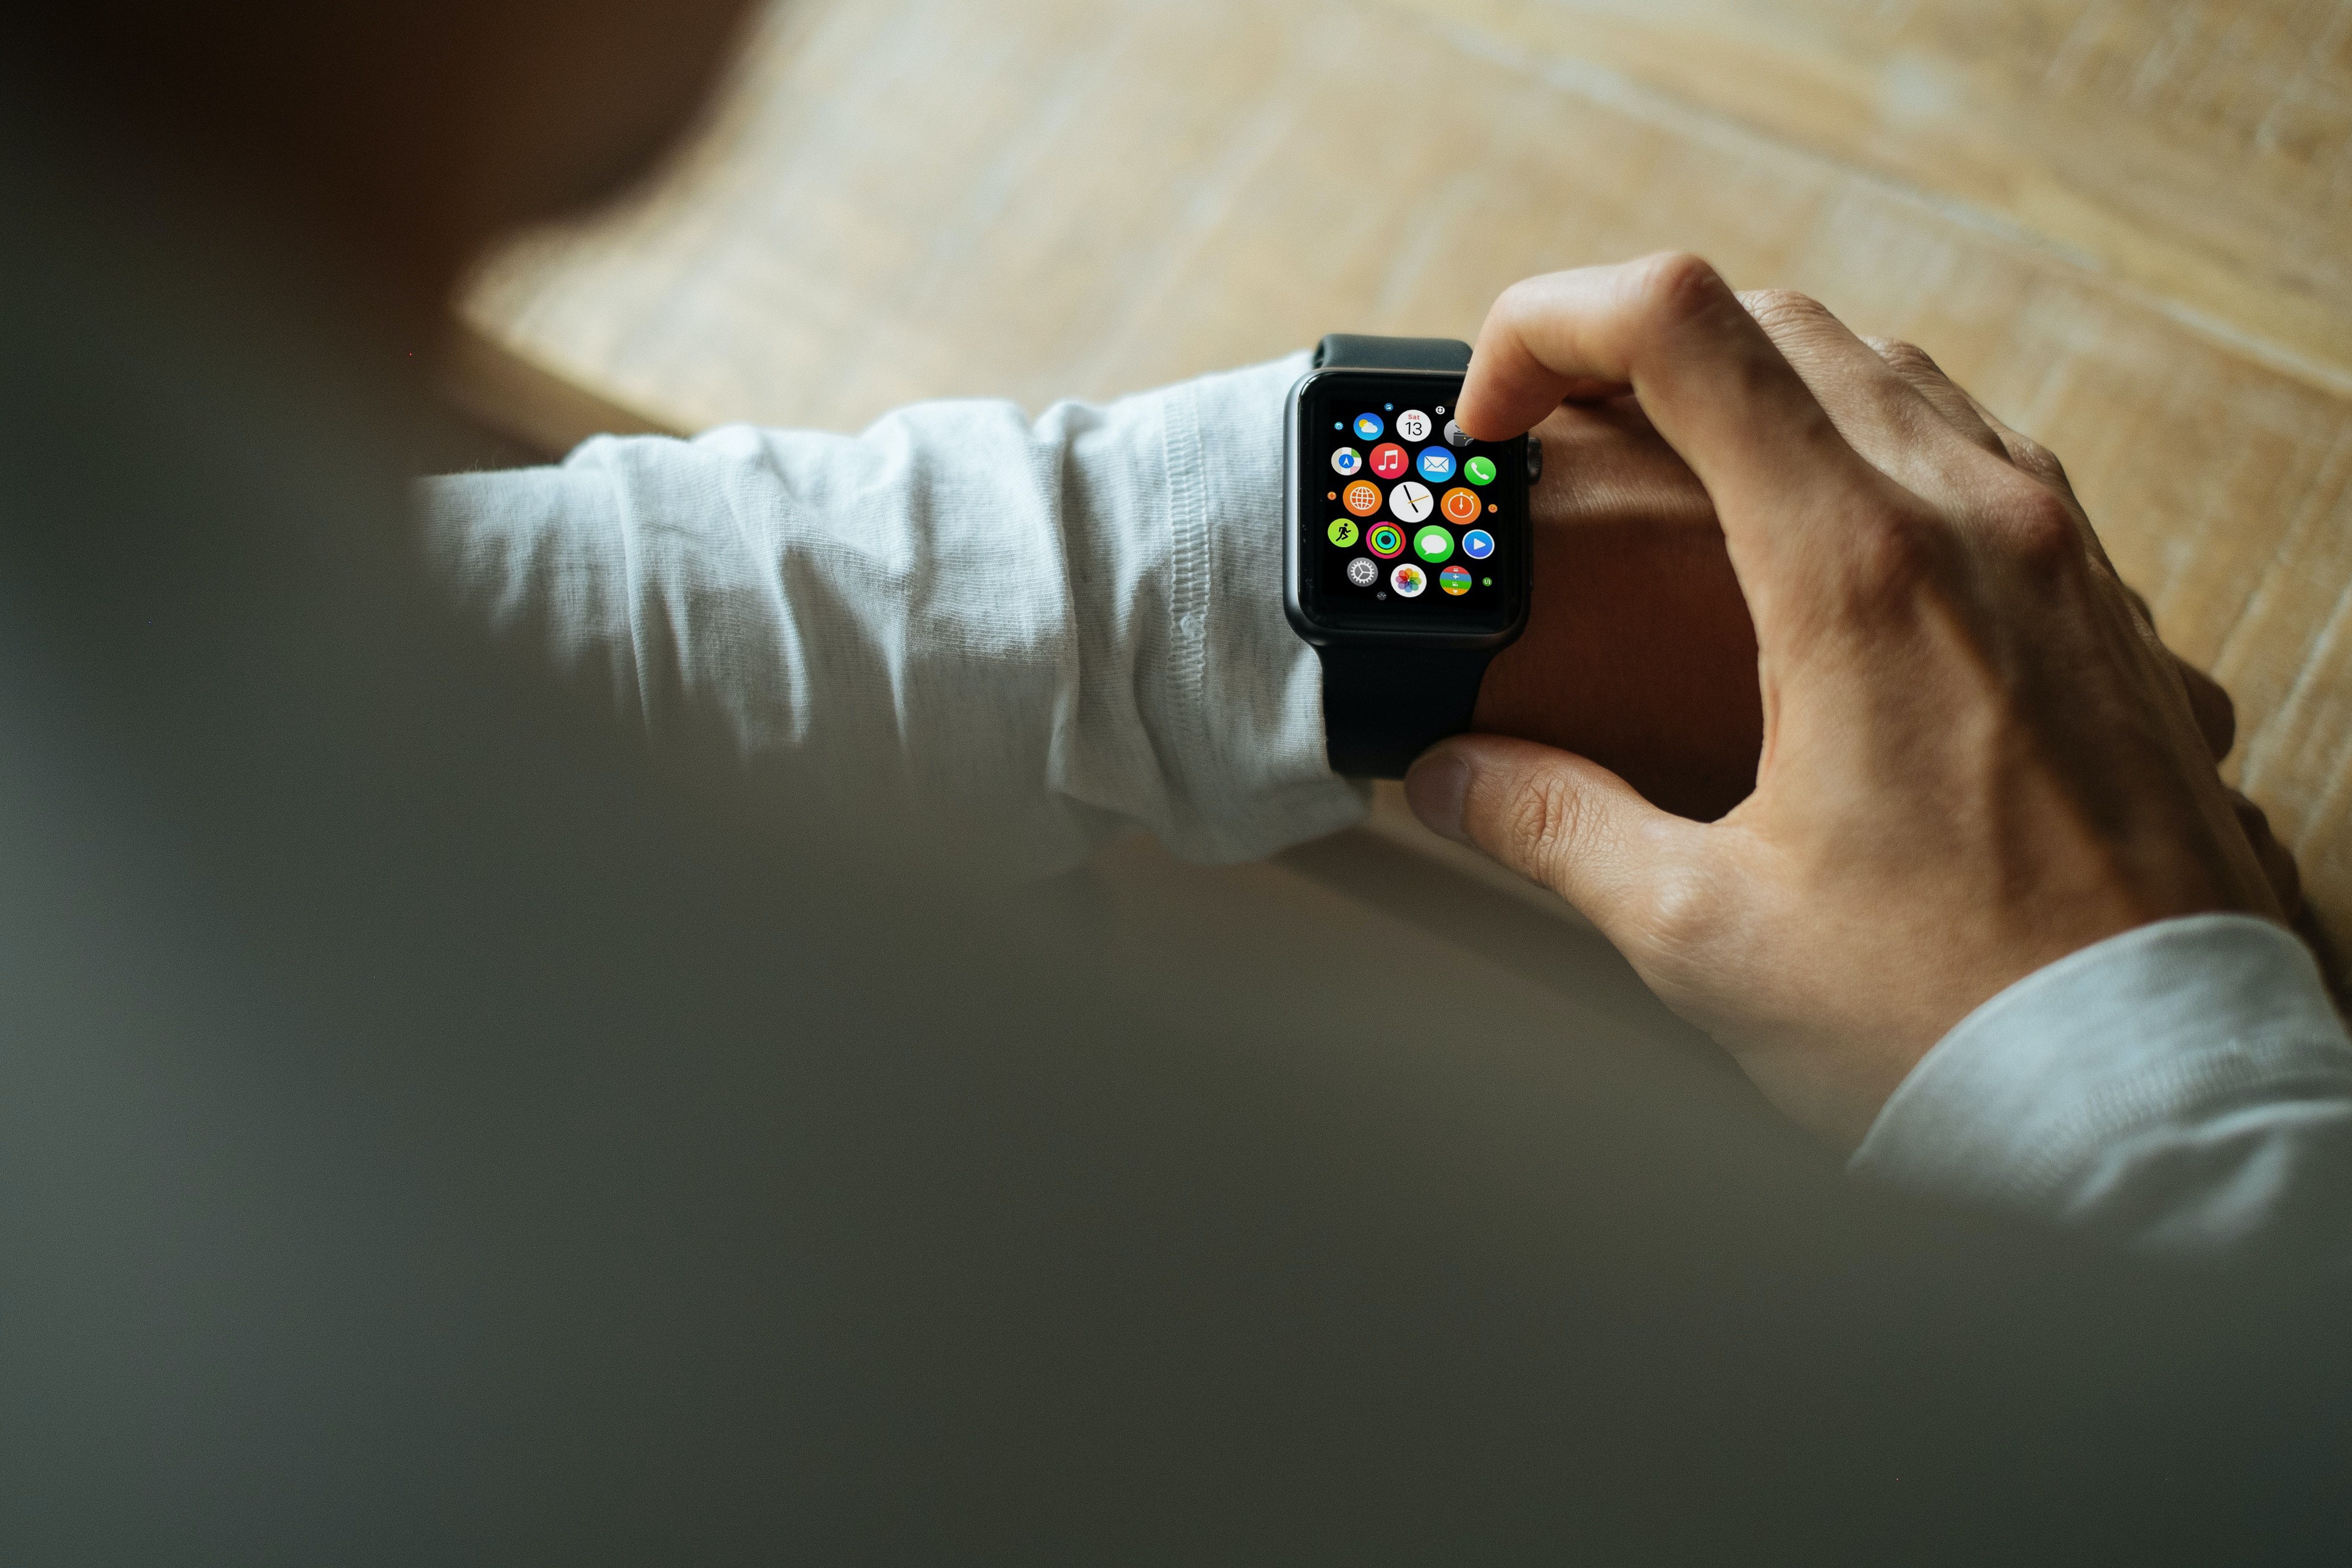 Using Apple Watch Indoors - Dovresti comprare un Apple Watch? 5 domande da porsi prima di farlo